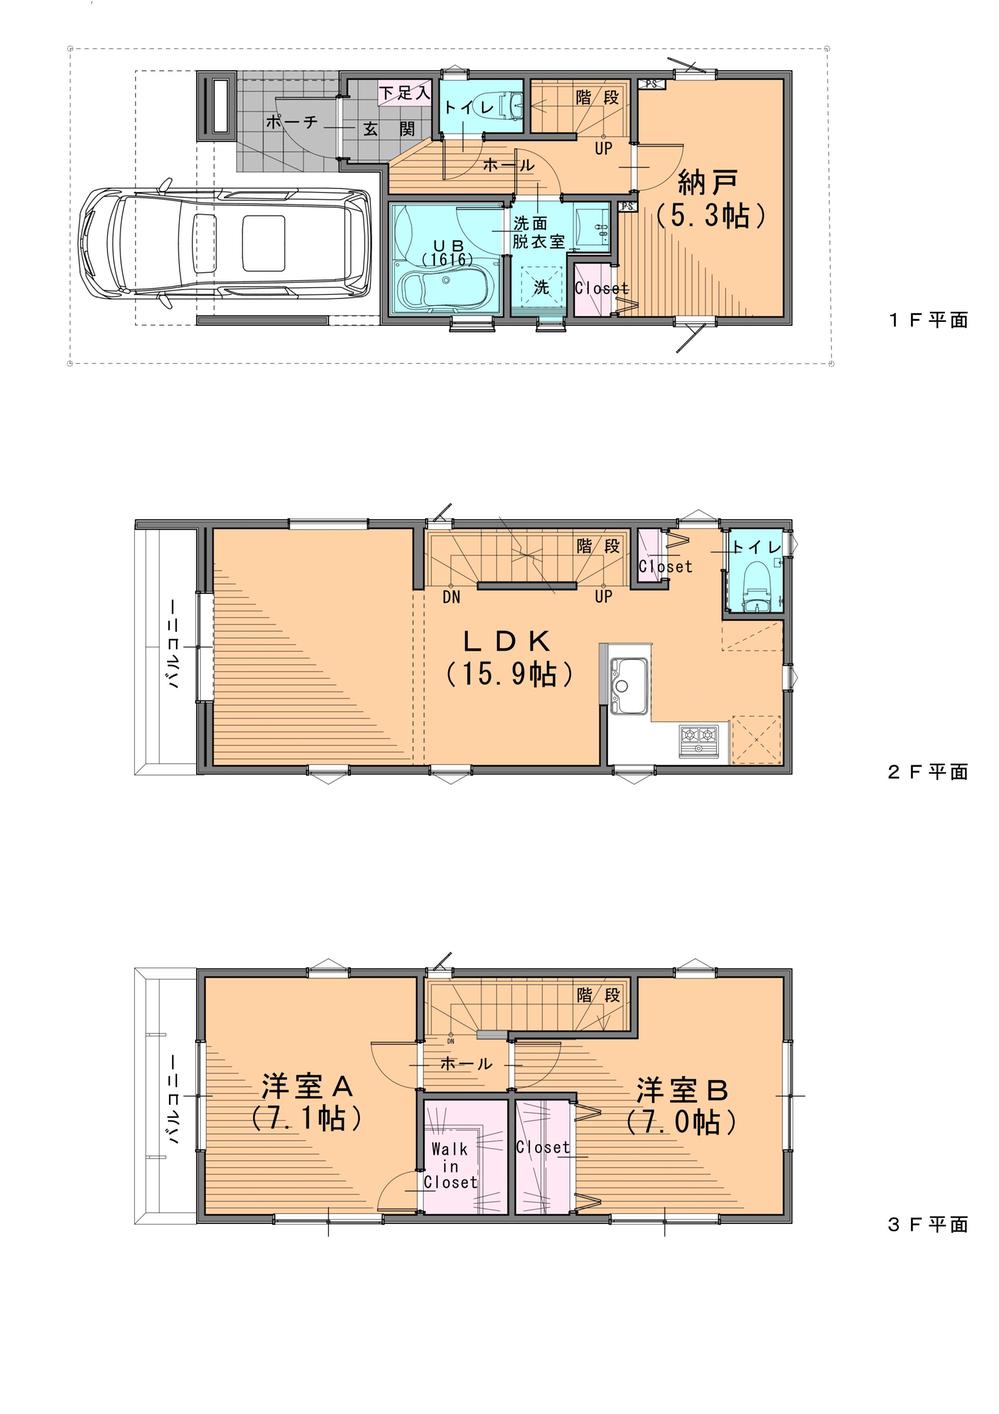 Floor plan. (D ・ E Building), Price 41,900,000 yen, 3LDK, Land area 52.9 sq m , Building area 96.87 sq m